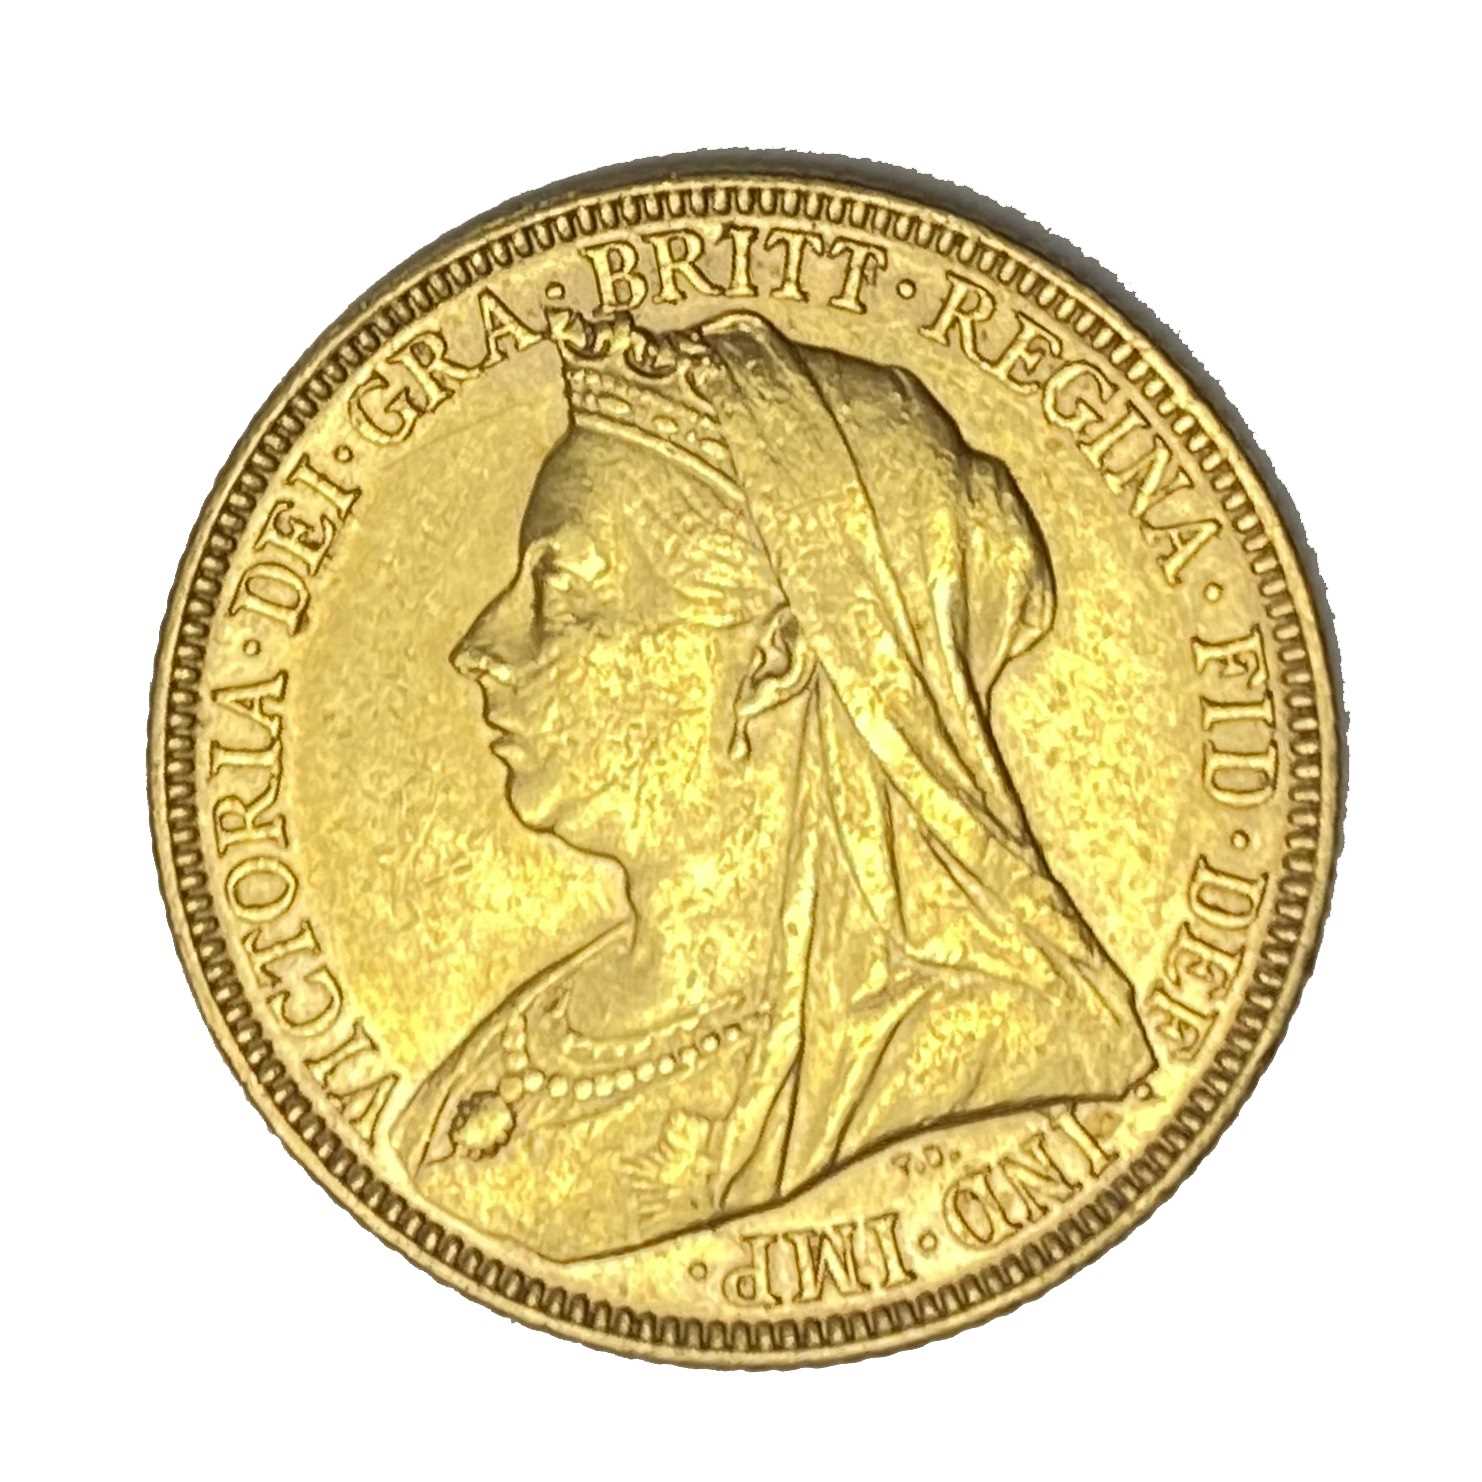 Lot 428 - Queen Victoria gold Sovereign coin, 1896